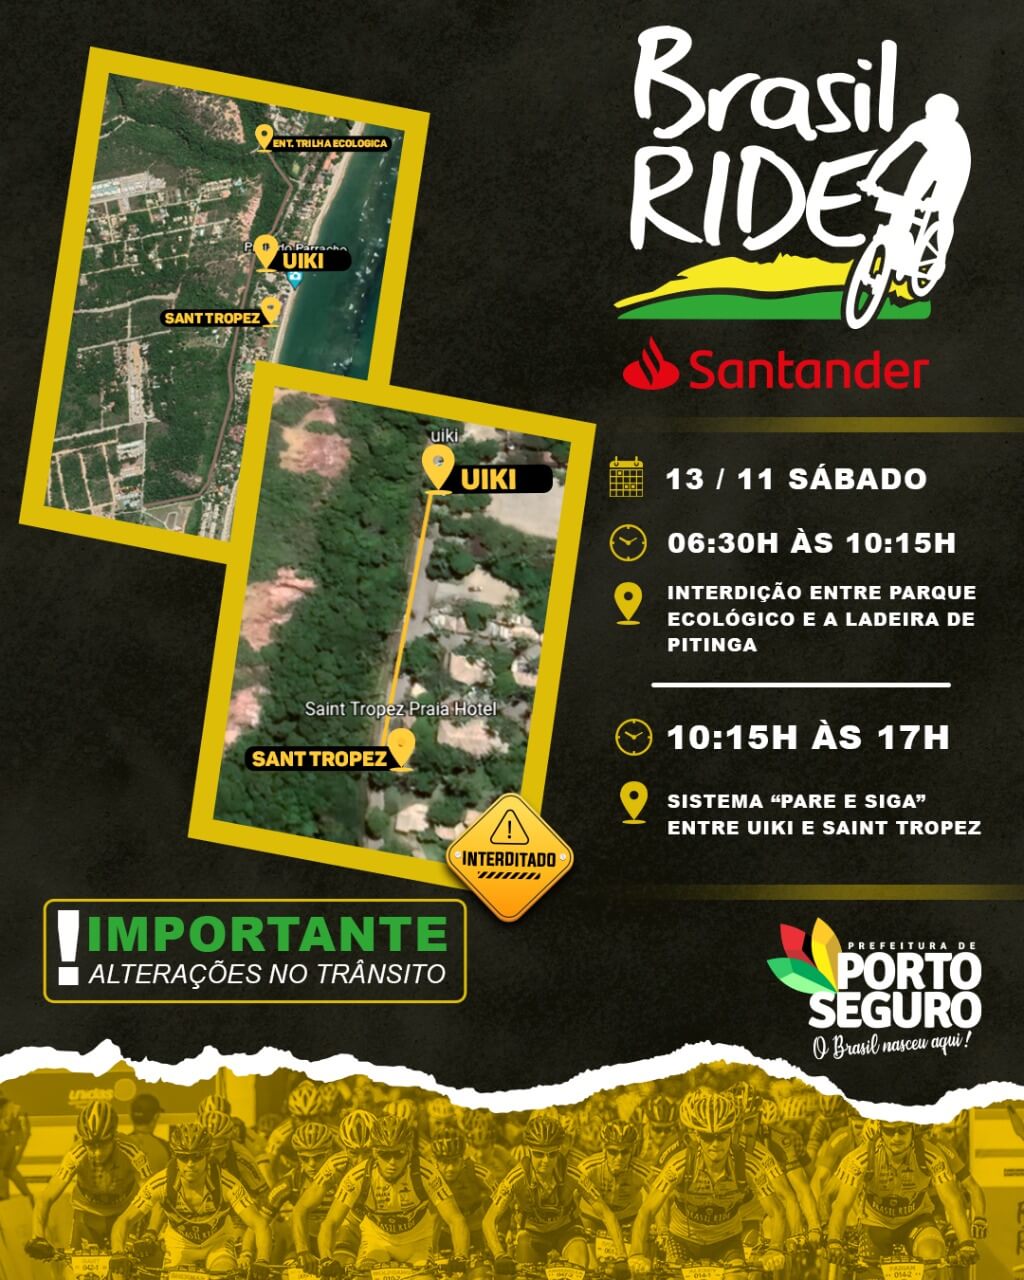 Porto Seguro: Chegou a hora! A 11ª edição da Brasil Ride começa neste sábado! 48